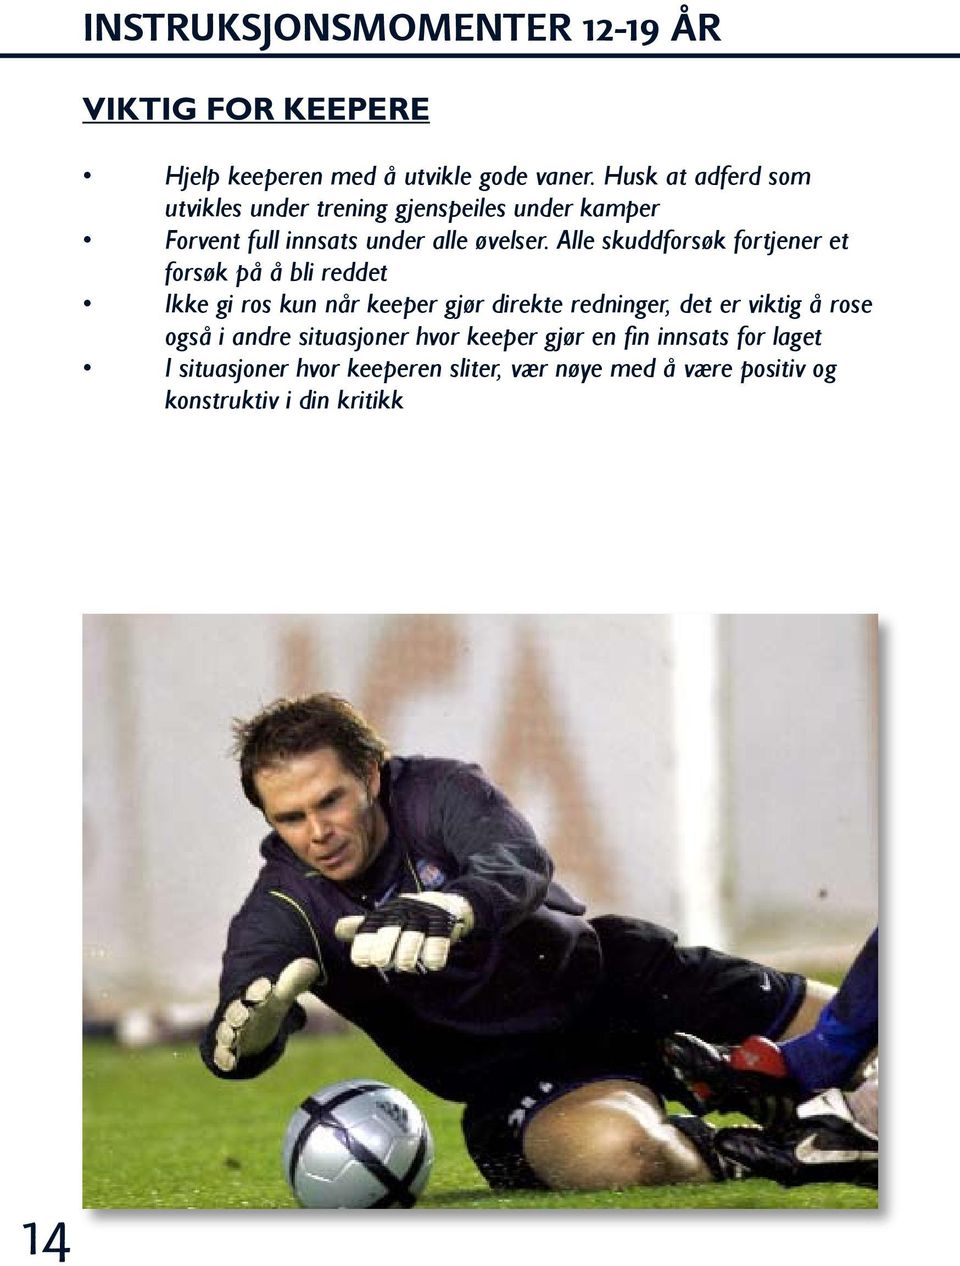 VÅLERENGA FOTBALL KEEPERTRENING PDF Free Download